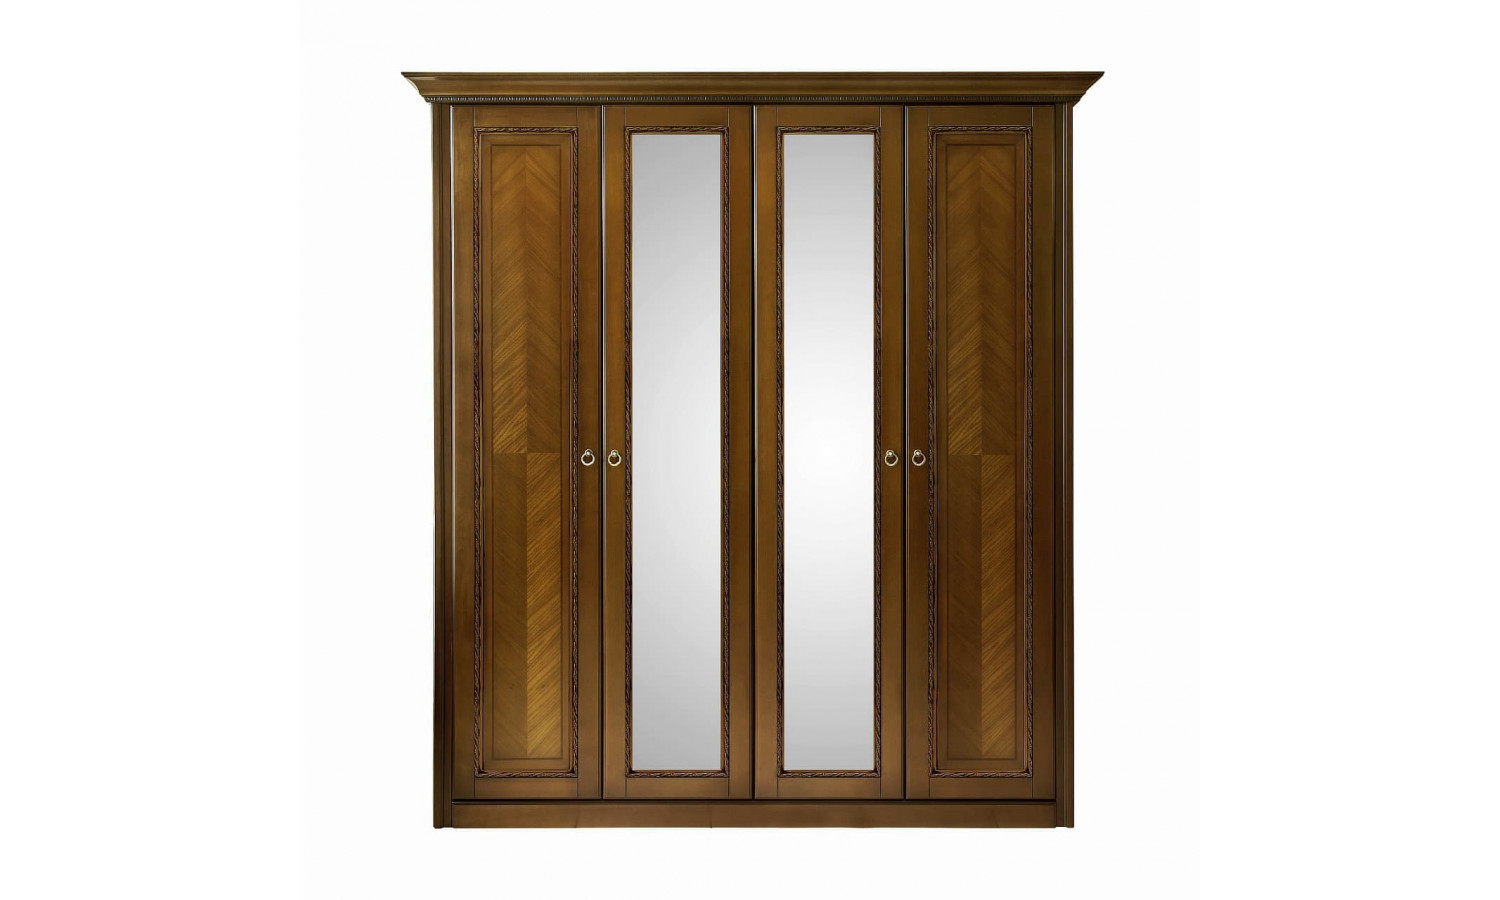 Шкаф 4 дверный с зеркалами Палермо Орех